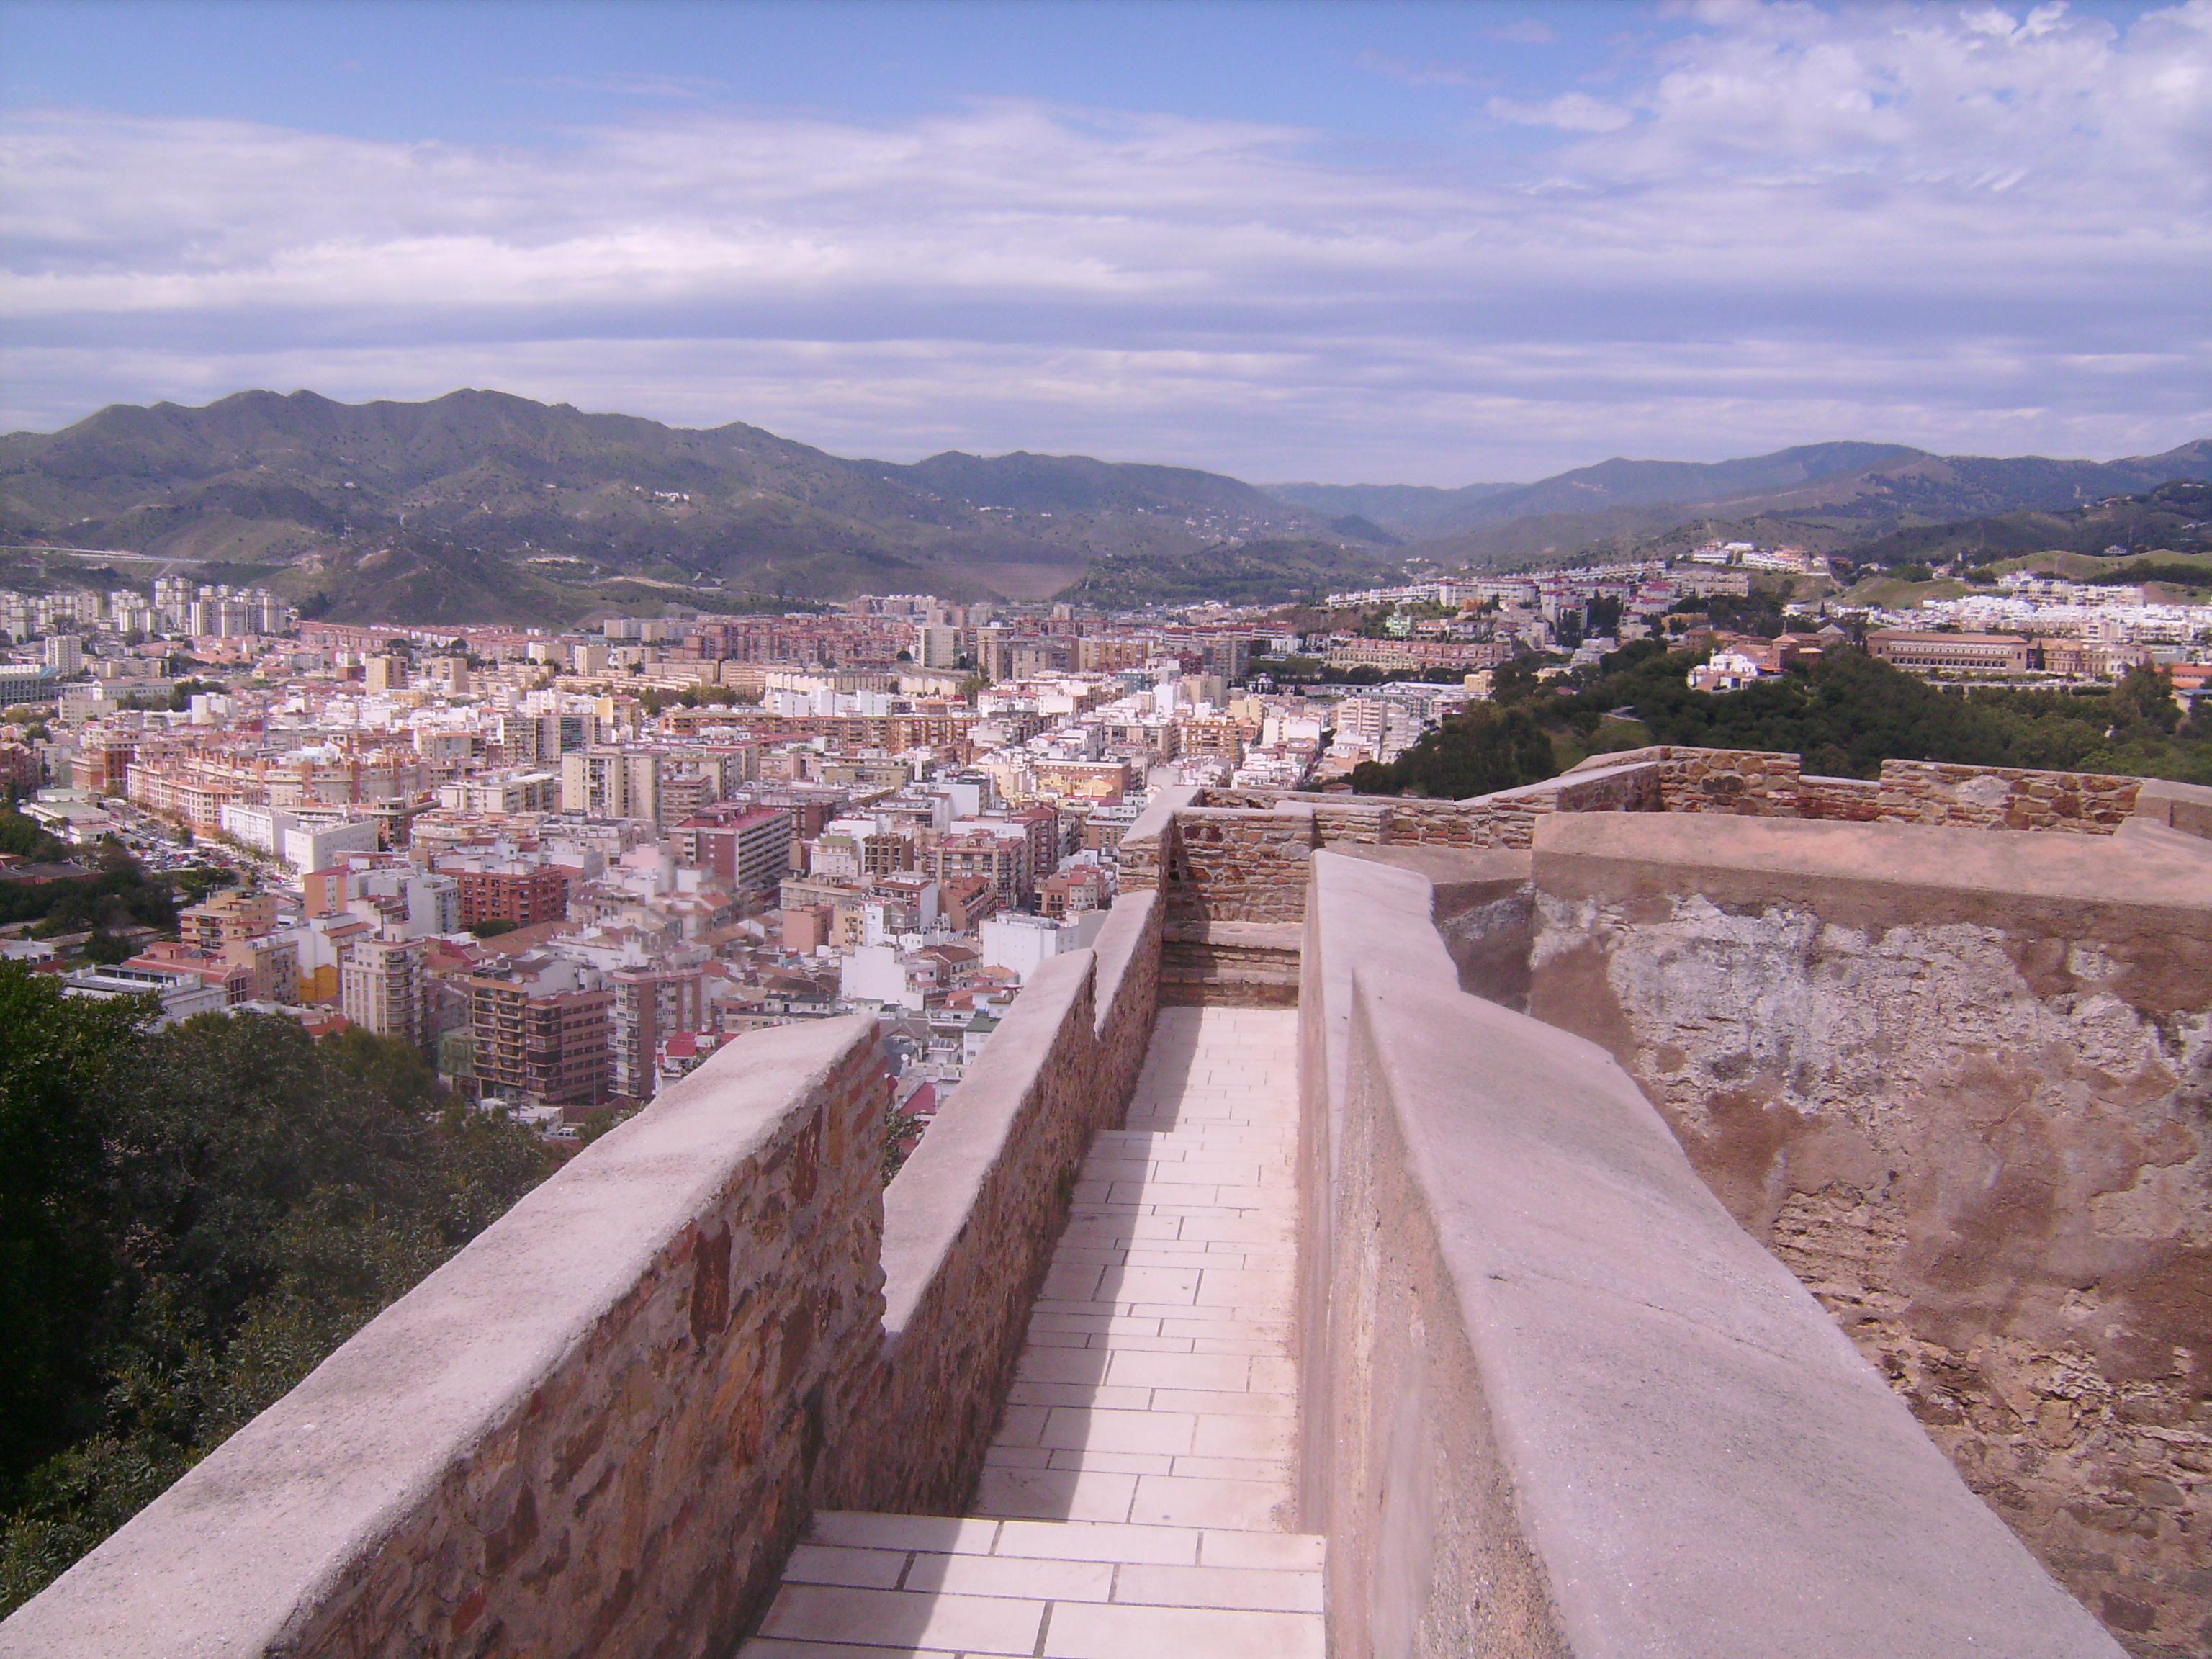 és Spanyolország legépebben megmaradt Alcazabája (az Alcazaba szó mór erődöt jelent). 